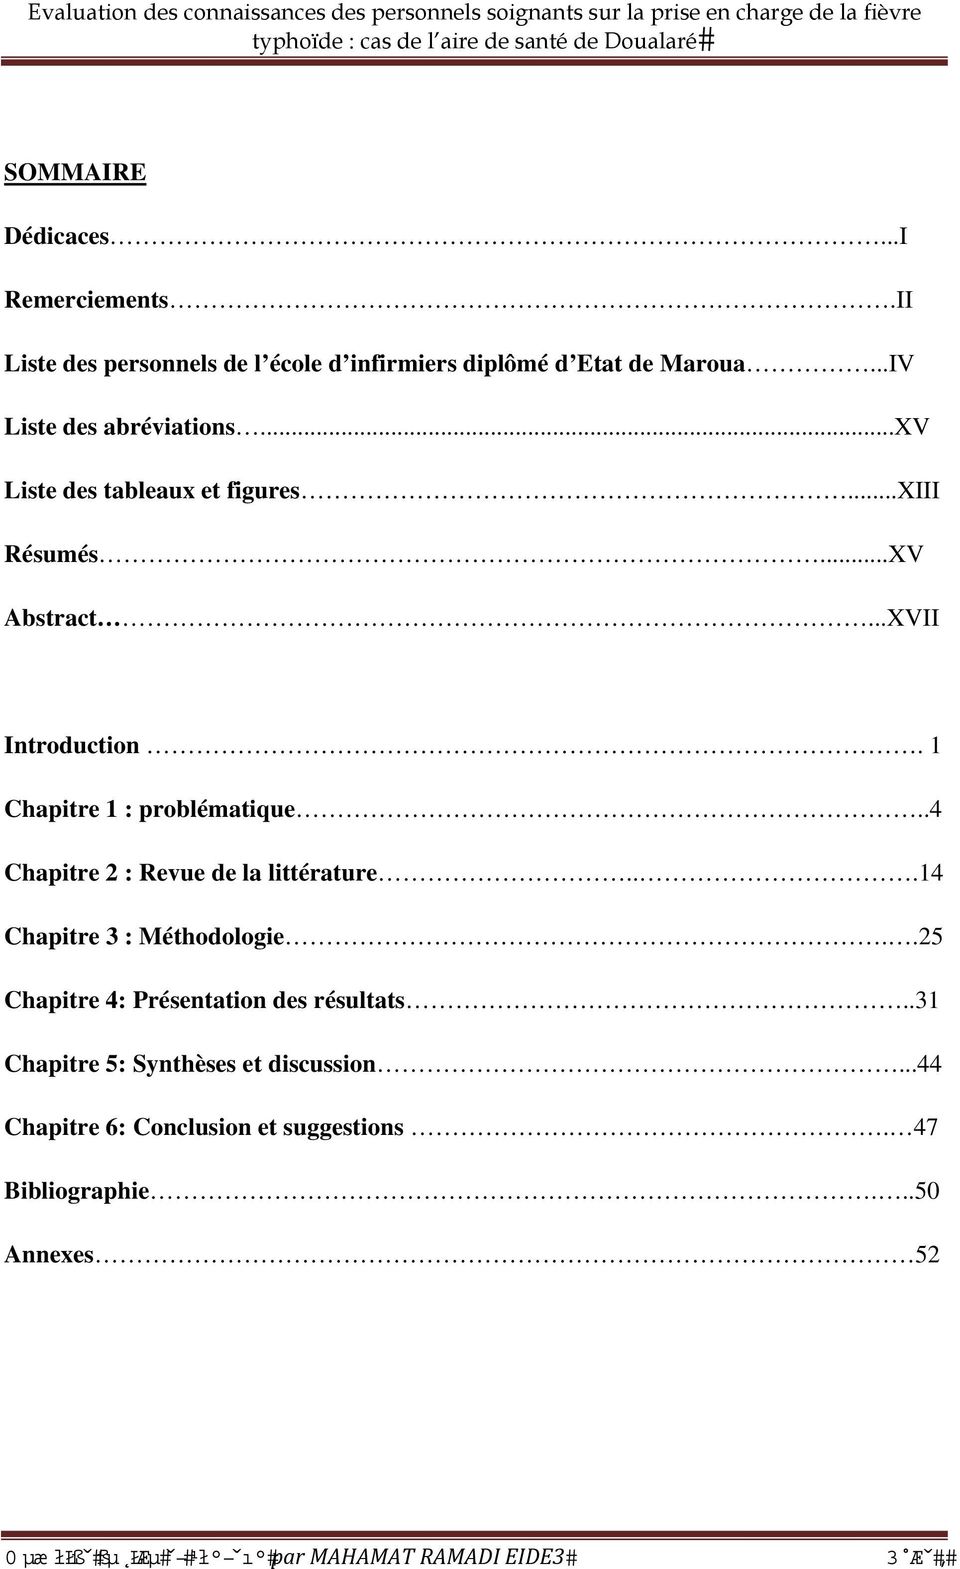 1 Chapitre 1 : problématique..4 Chapitre 2 : Revue de la littérature...14 Chapitre 3 : Méthodologie.